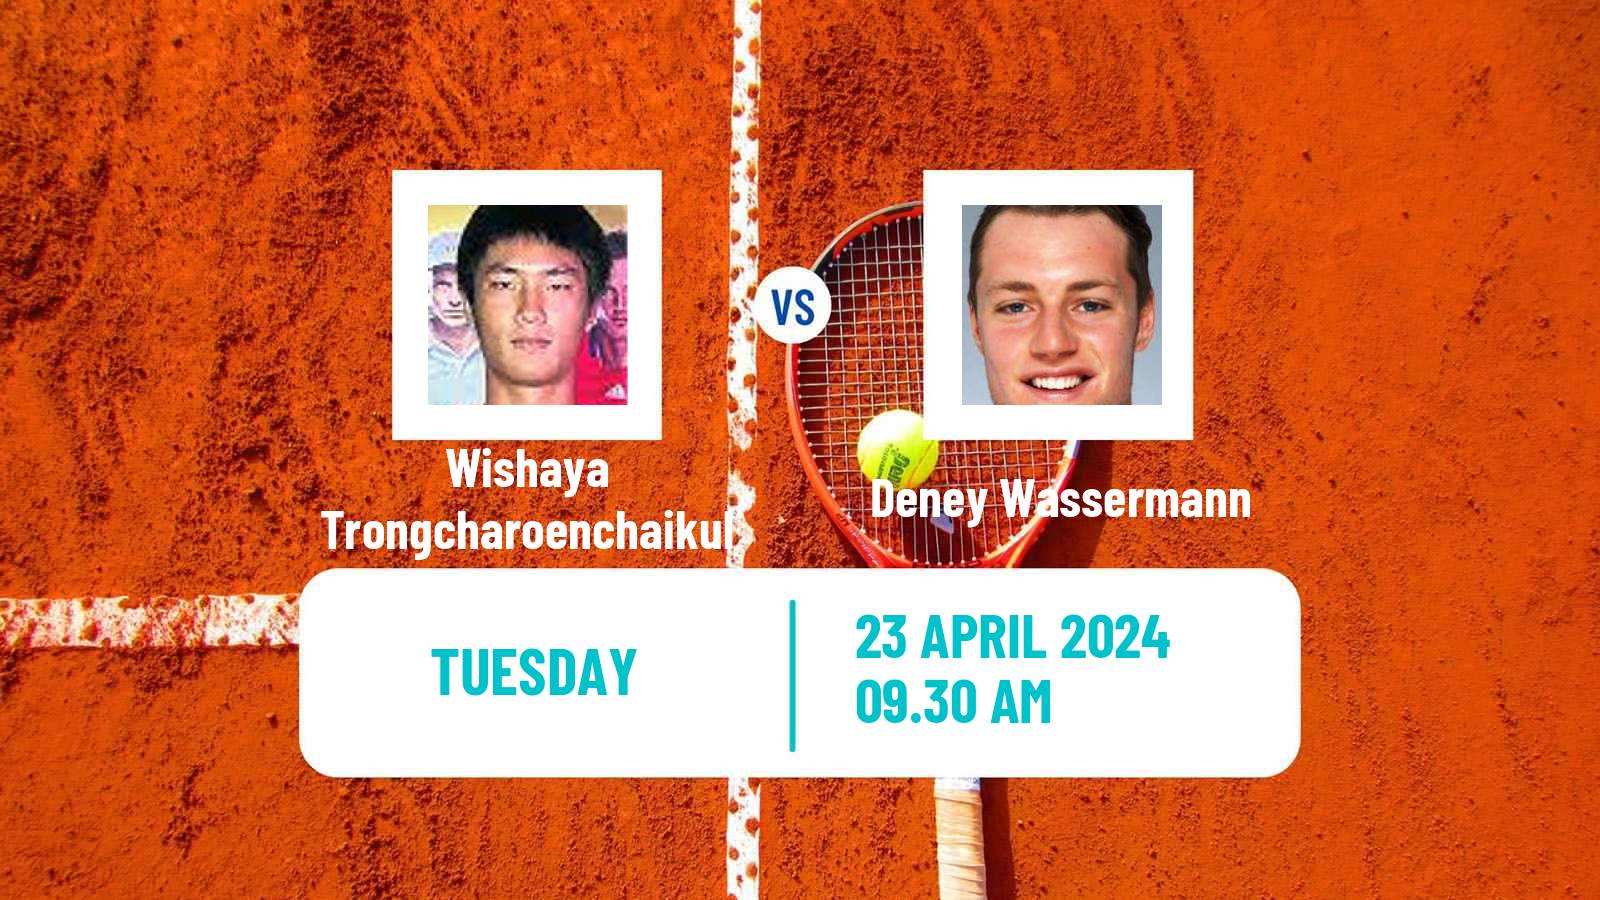 Tennis ITF M15 Antalya 12 Men Wishaya Trongcharoenchaikul - Deney Wassermann